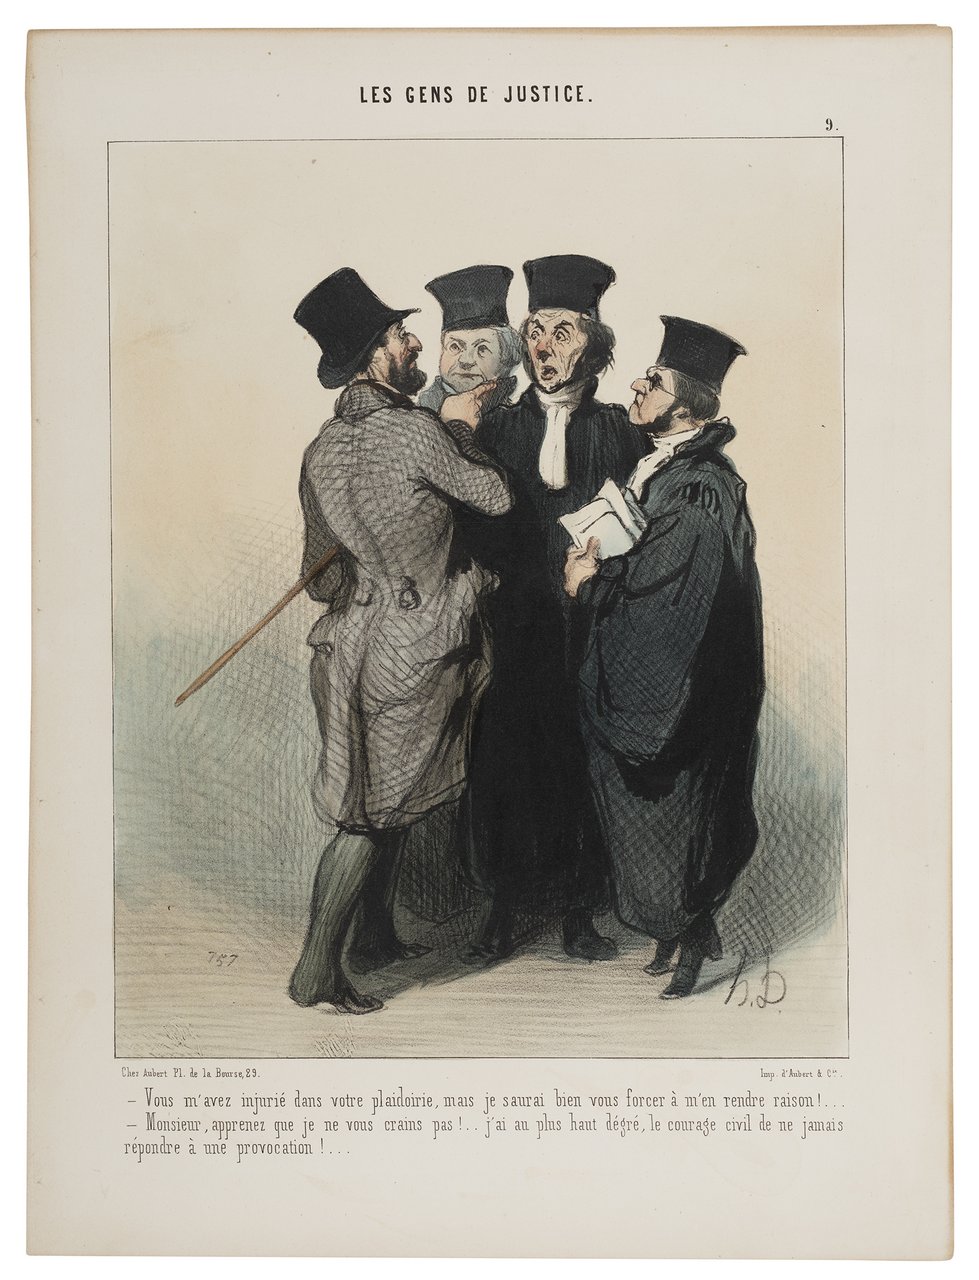 Honoré Daumier, Sie haben mich in Ihrem Plädoyer beleidigt, 1845, Handkolorierte Lithografie, Kunstmuseum Pablo Picasso Münster